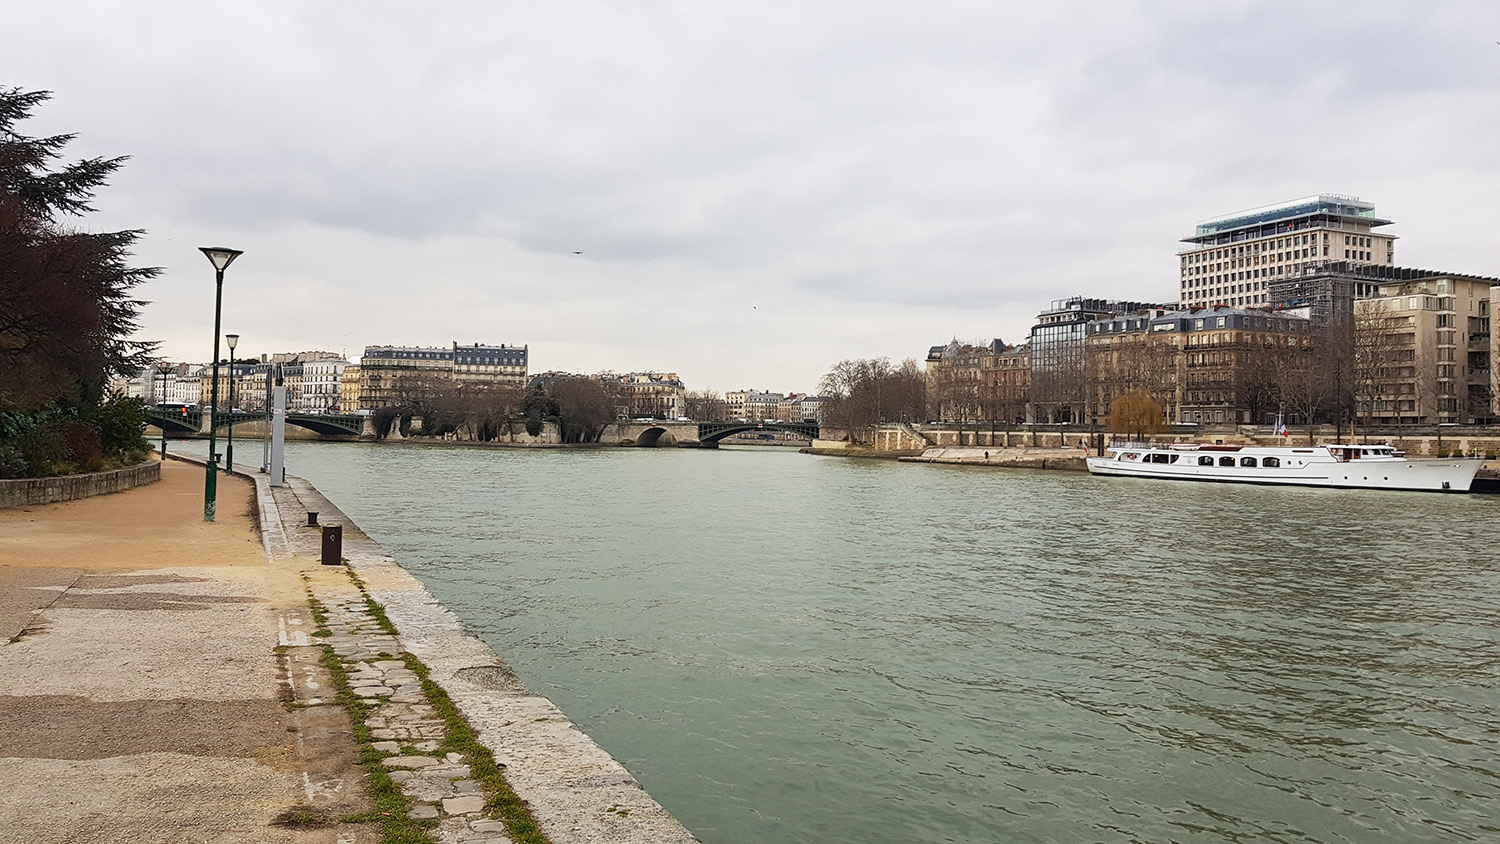 Pour se rendre au Pavillon de l’Arsenal, notre journaliste longe la Seine en marchant. Il se trouve qu’elle était justement à un autre reportage non loin de là, de l’autre côté du fleuve © Globe Reporters